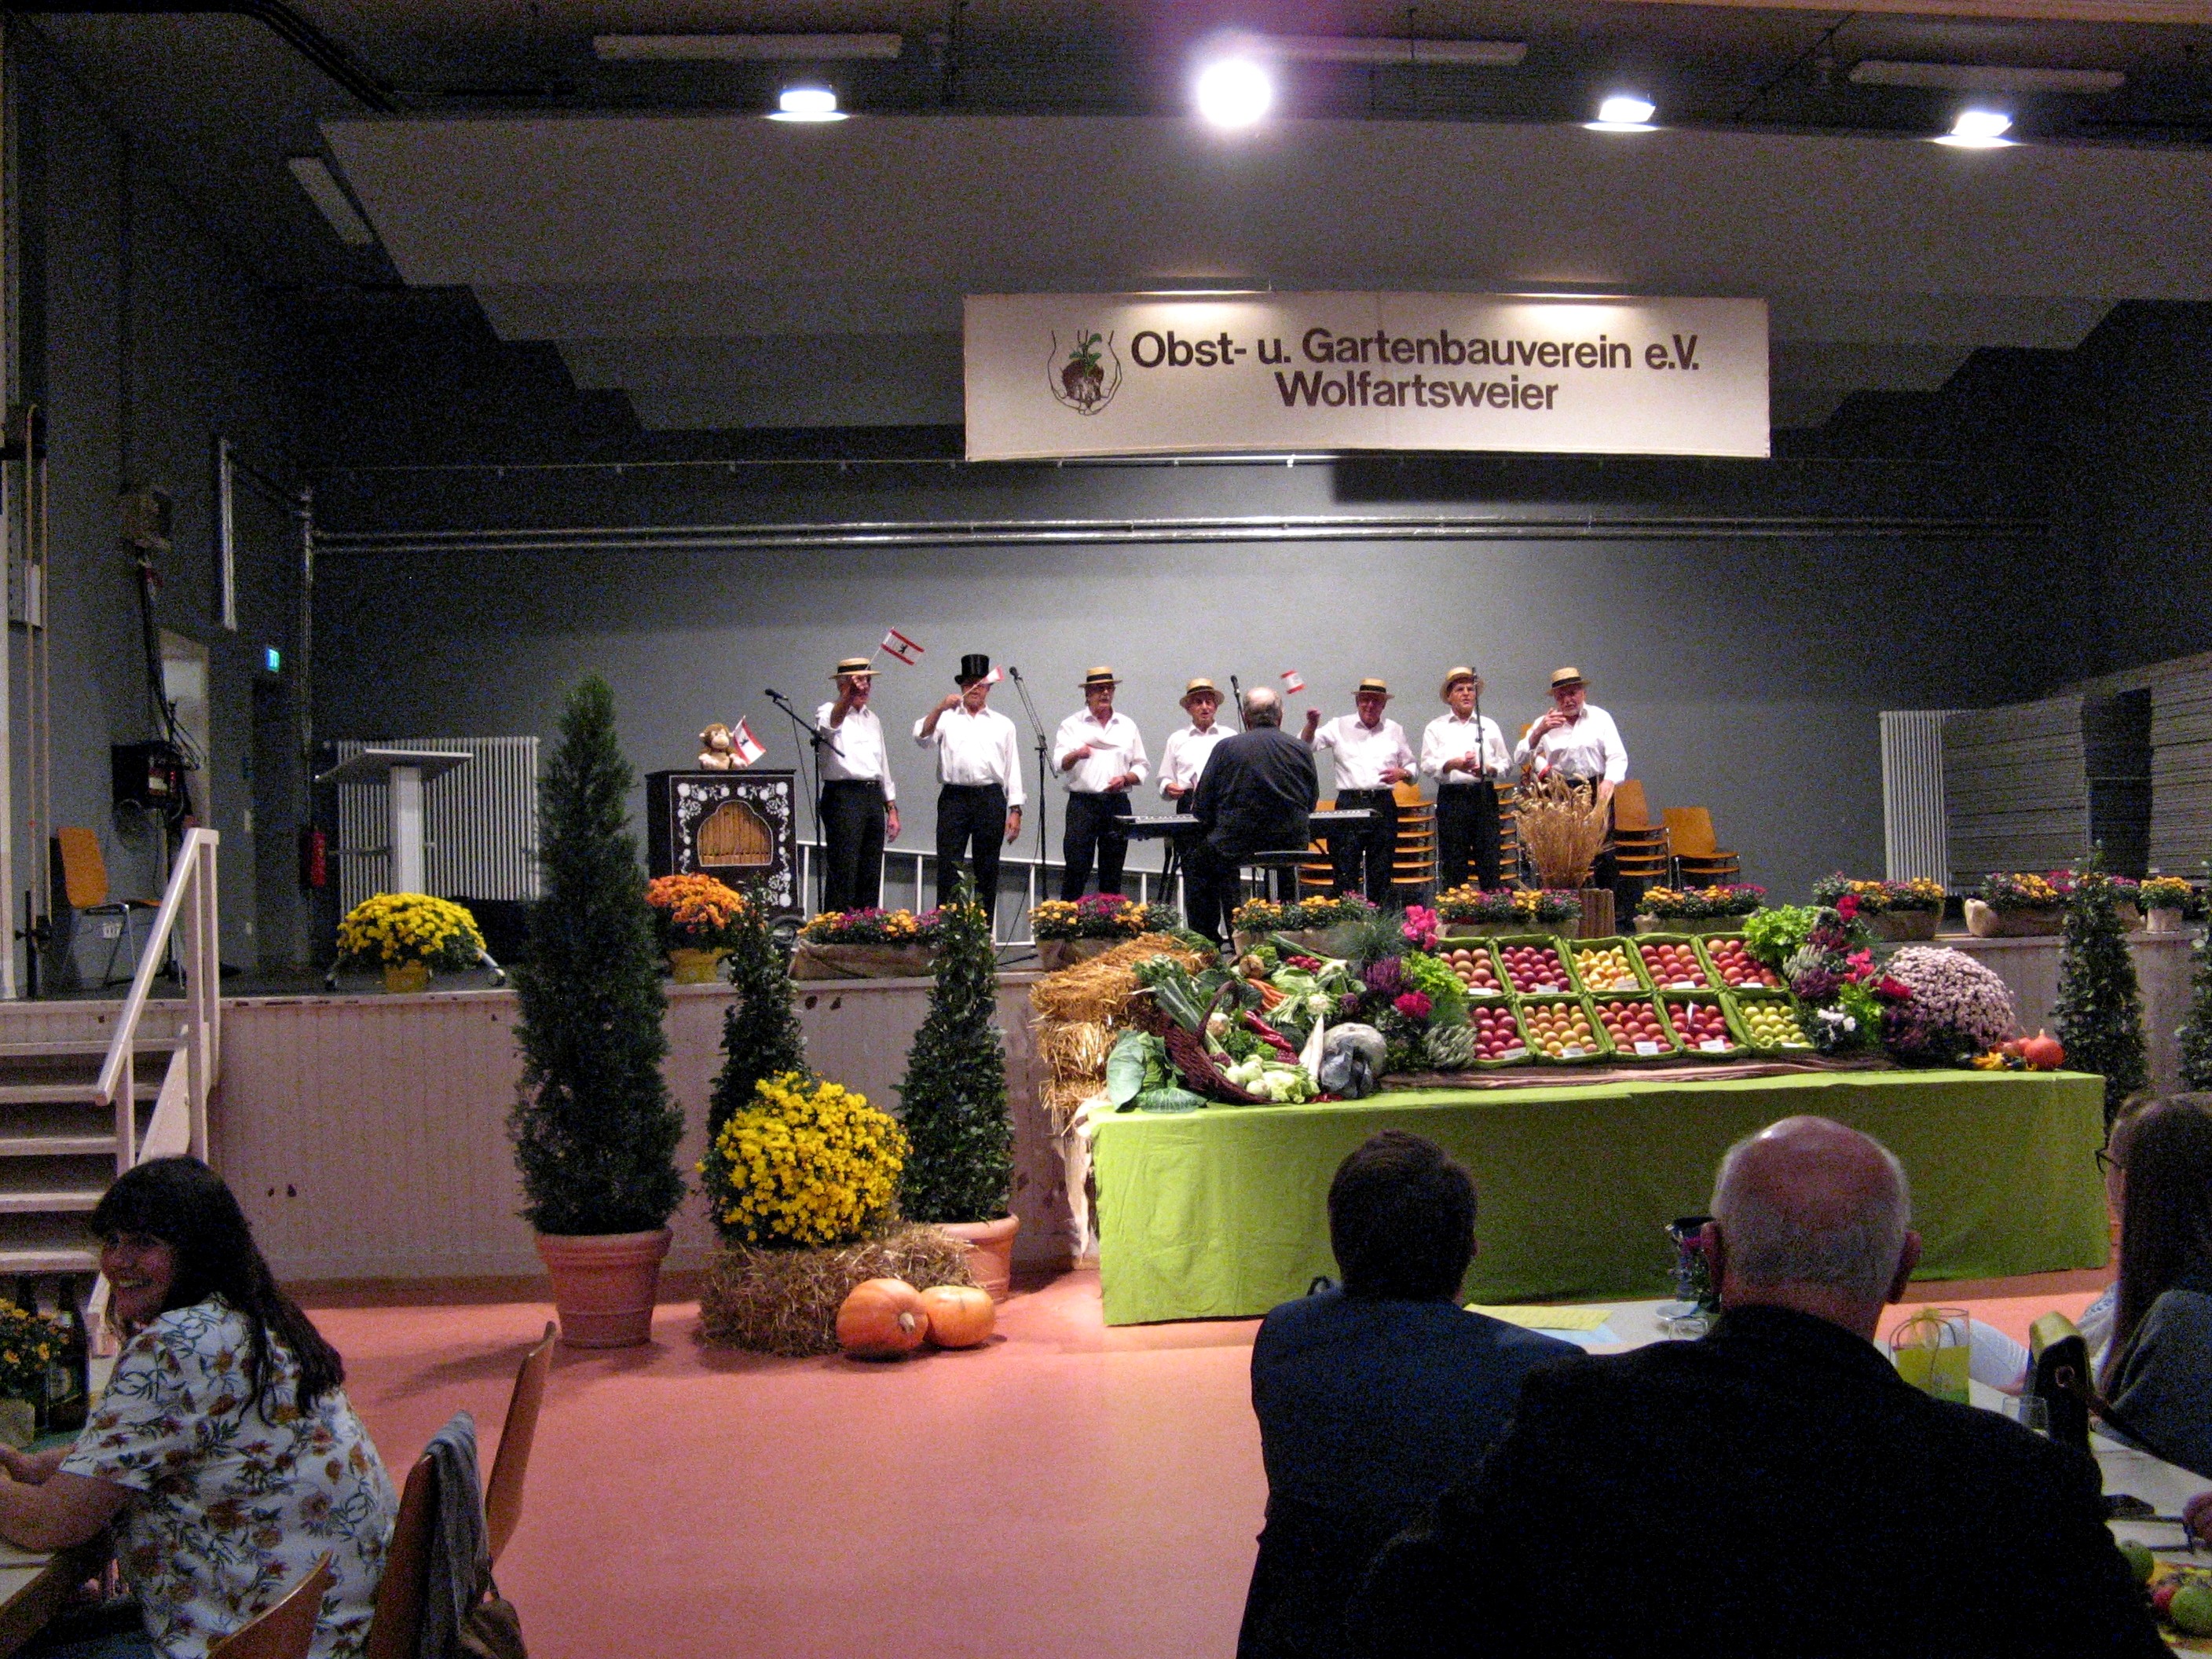 13-Erntedankfest-Obst-und-Gartenbauverein-Wolfartsweier